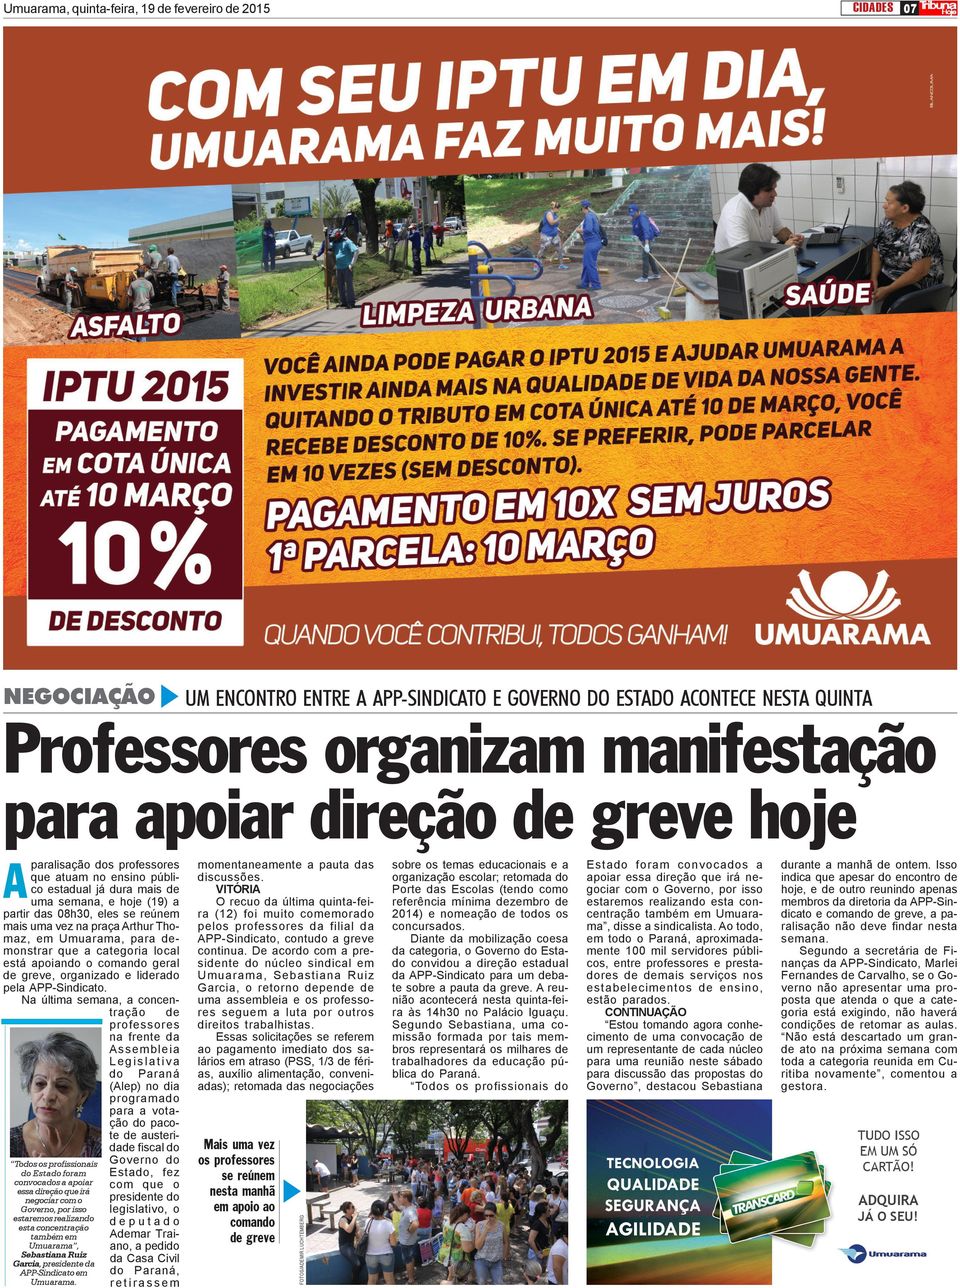 De acordo com a presidente do núcleo sindical em Umuarama, Sebastiana Ruiz Garcia, o retorno depende de uma assembleia e os professores seguem a luta por outros direitos trabalhistas.